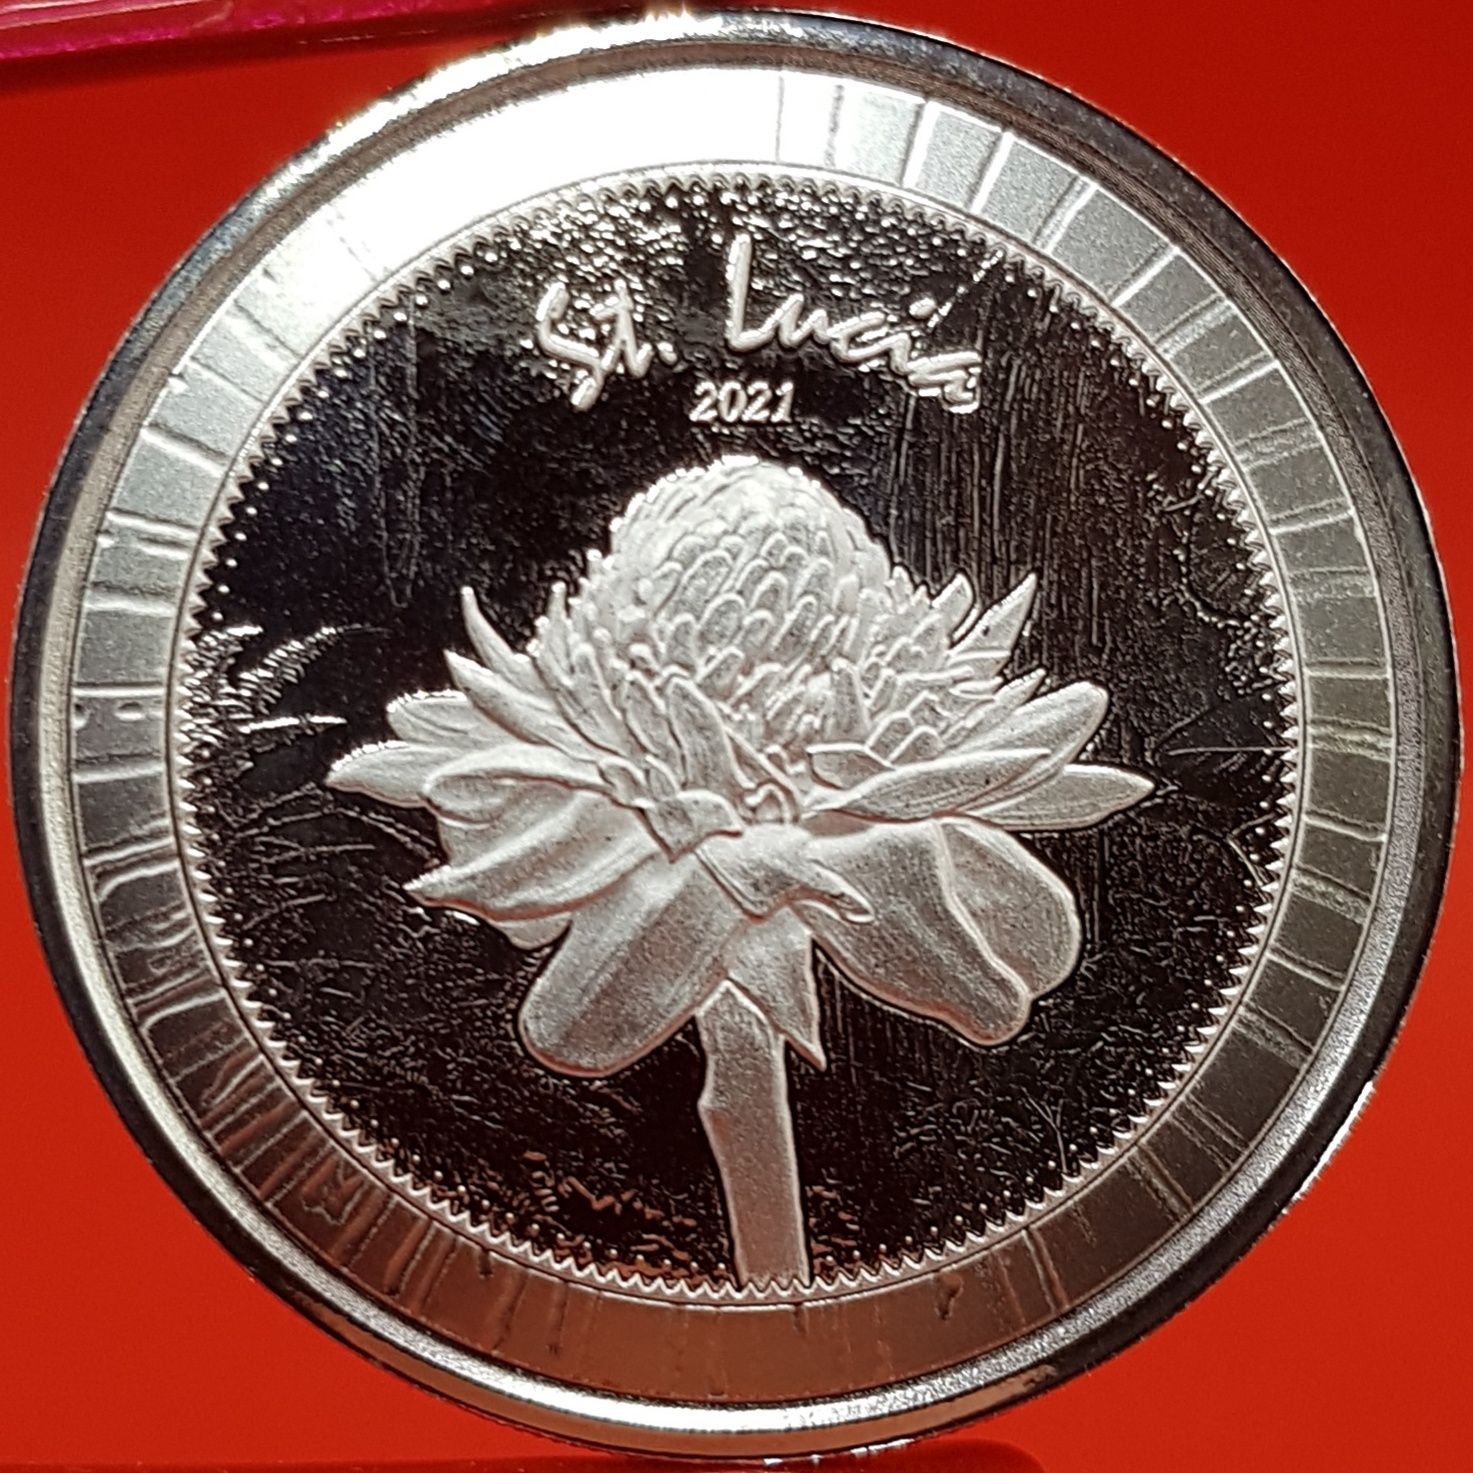 SUA Scottsdale Mint EC8 2021 monede lingou argint 999